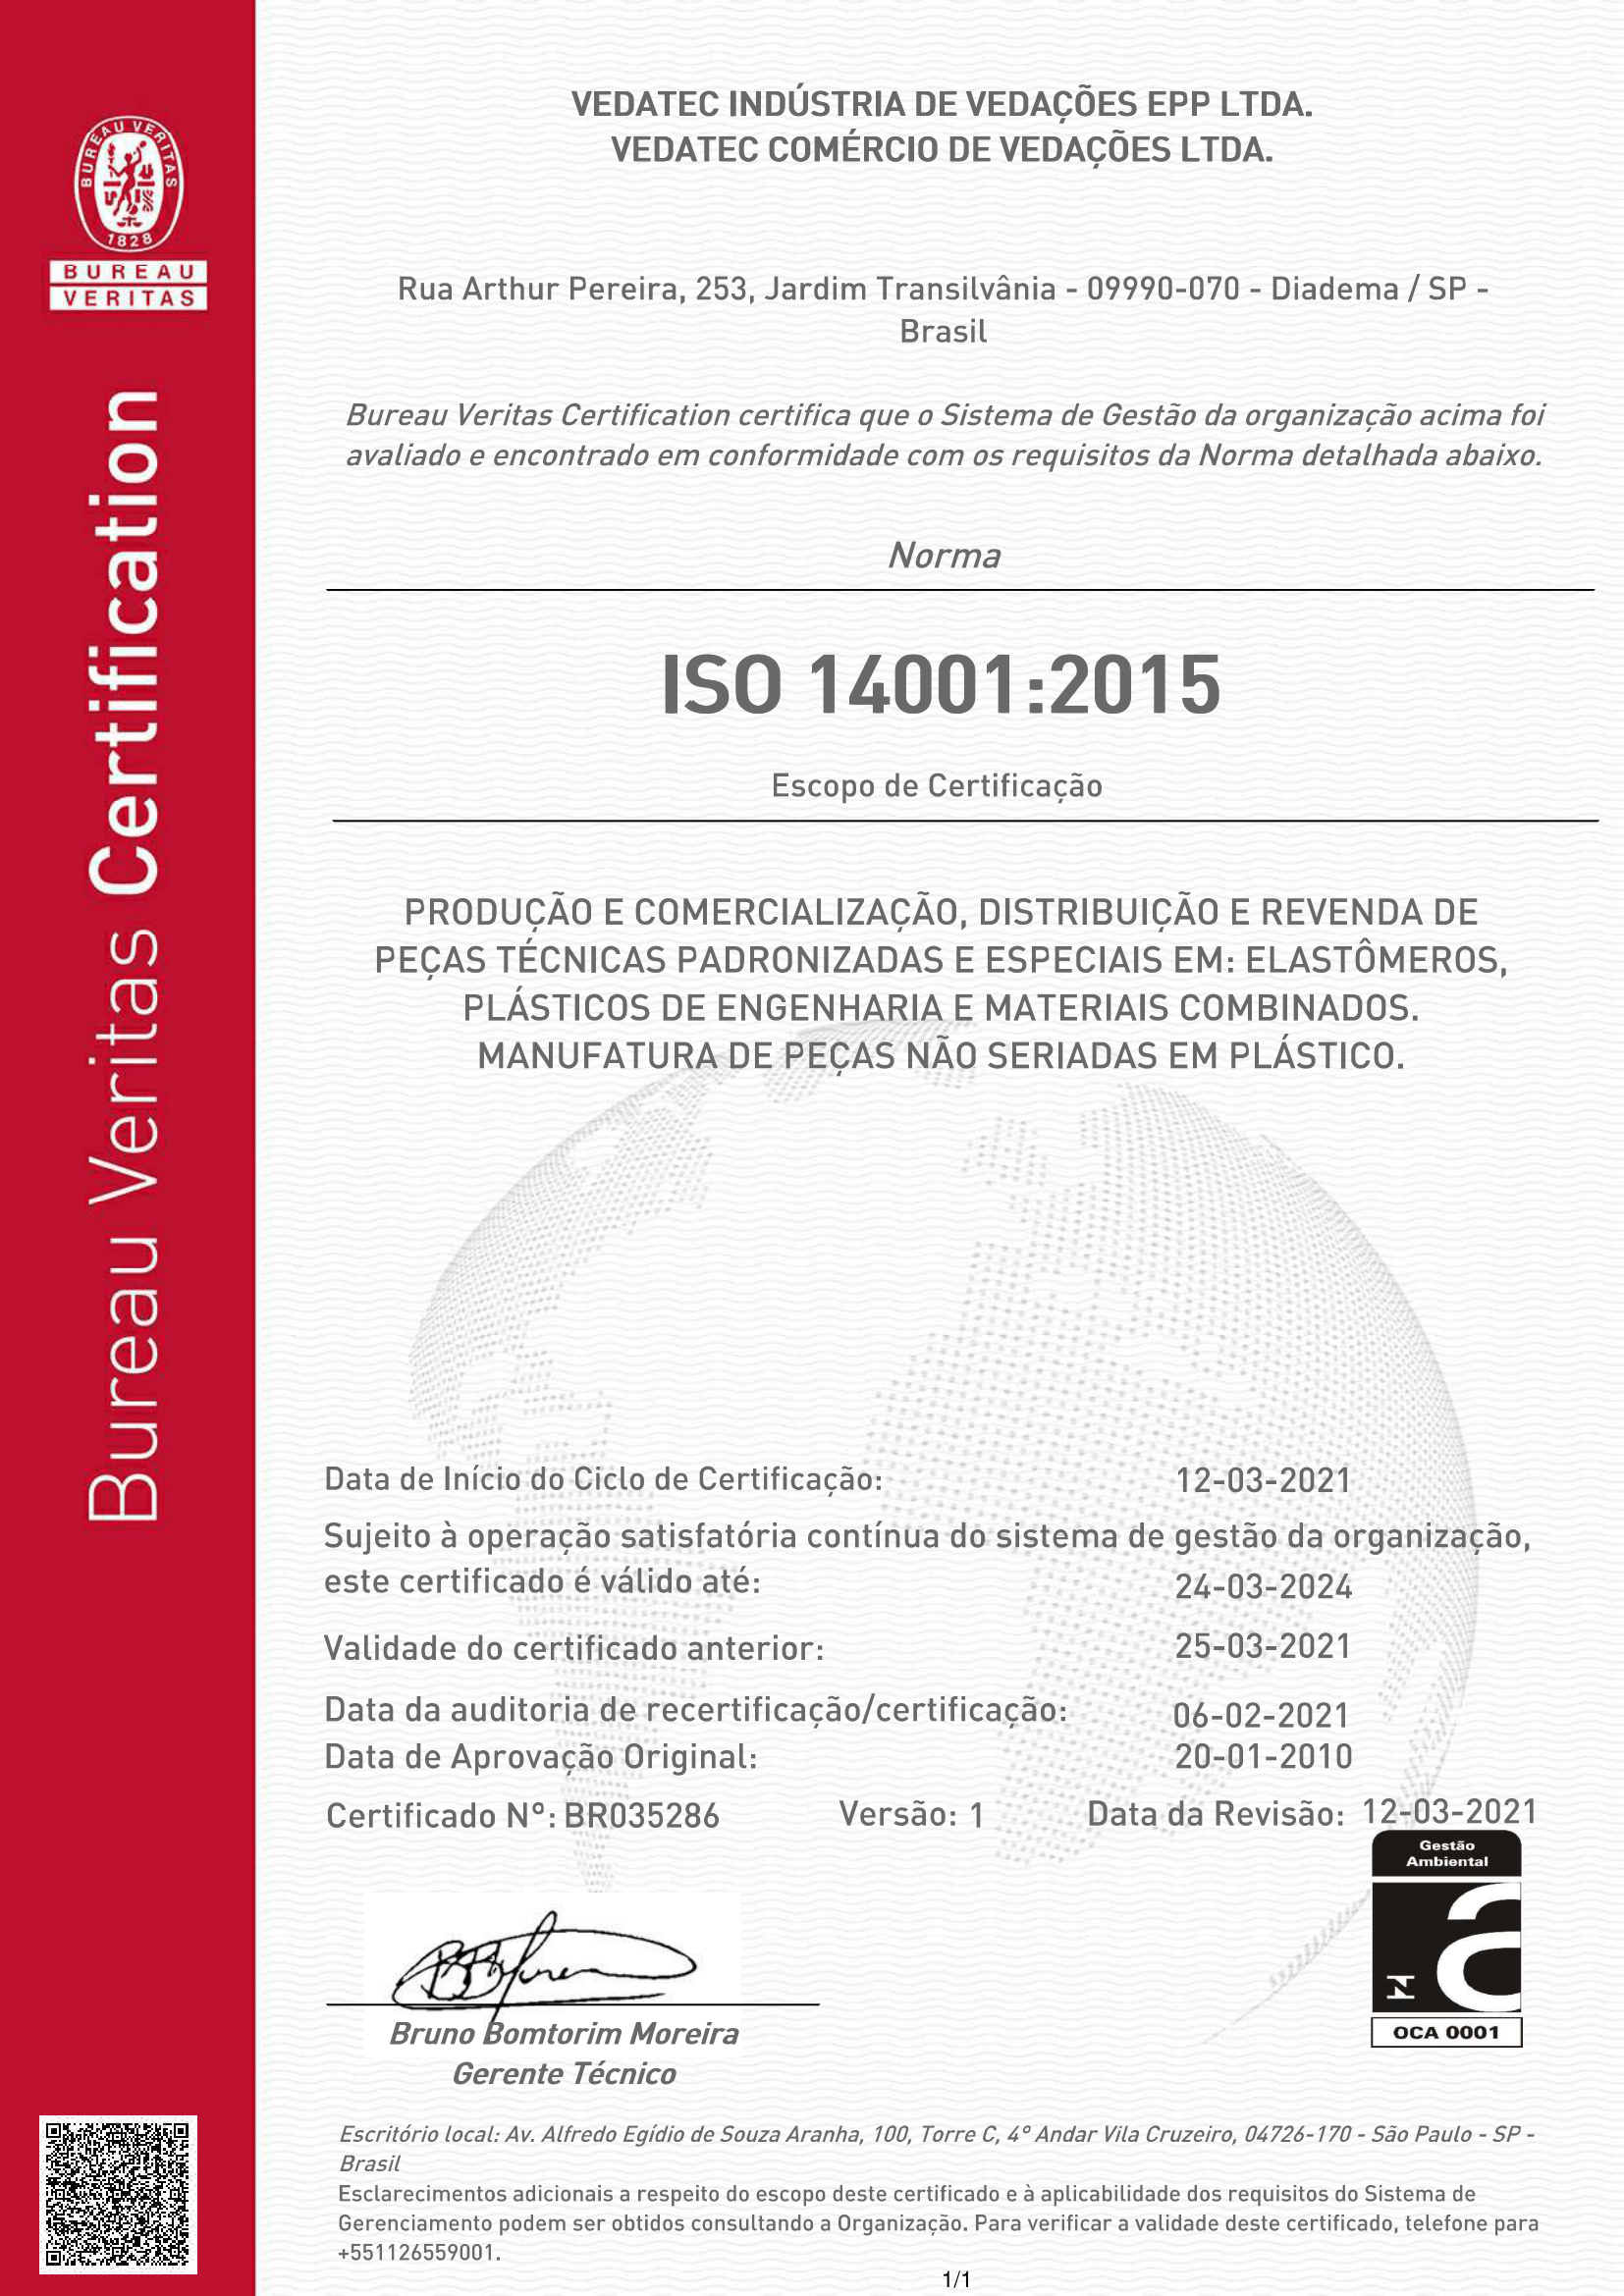 ISO 14001 – VEDATEC 1